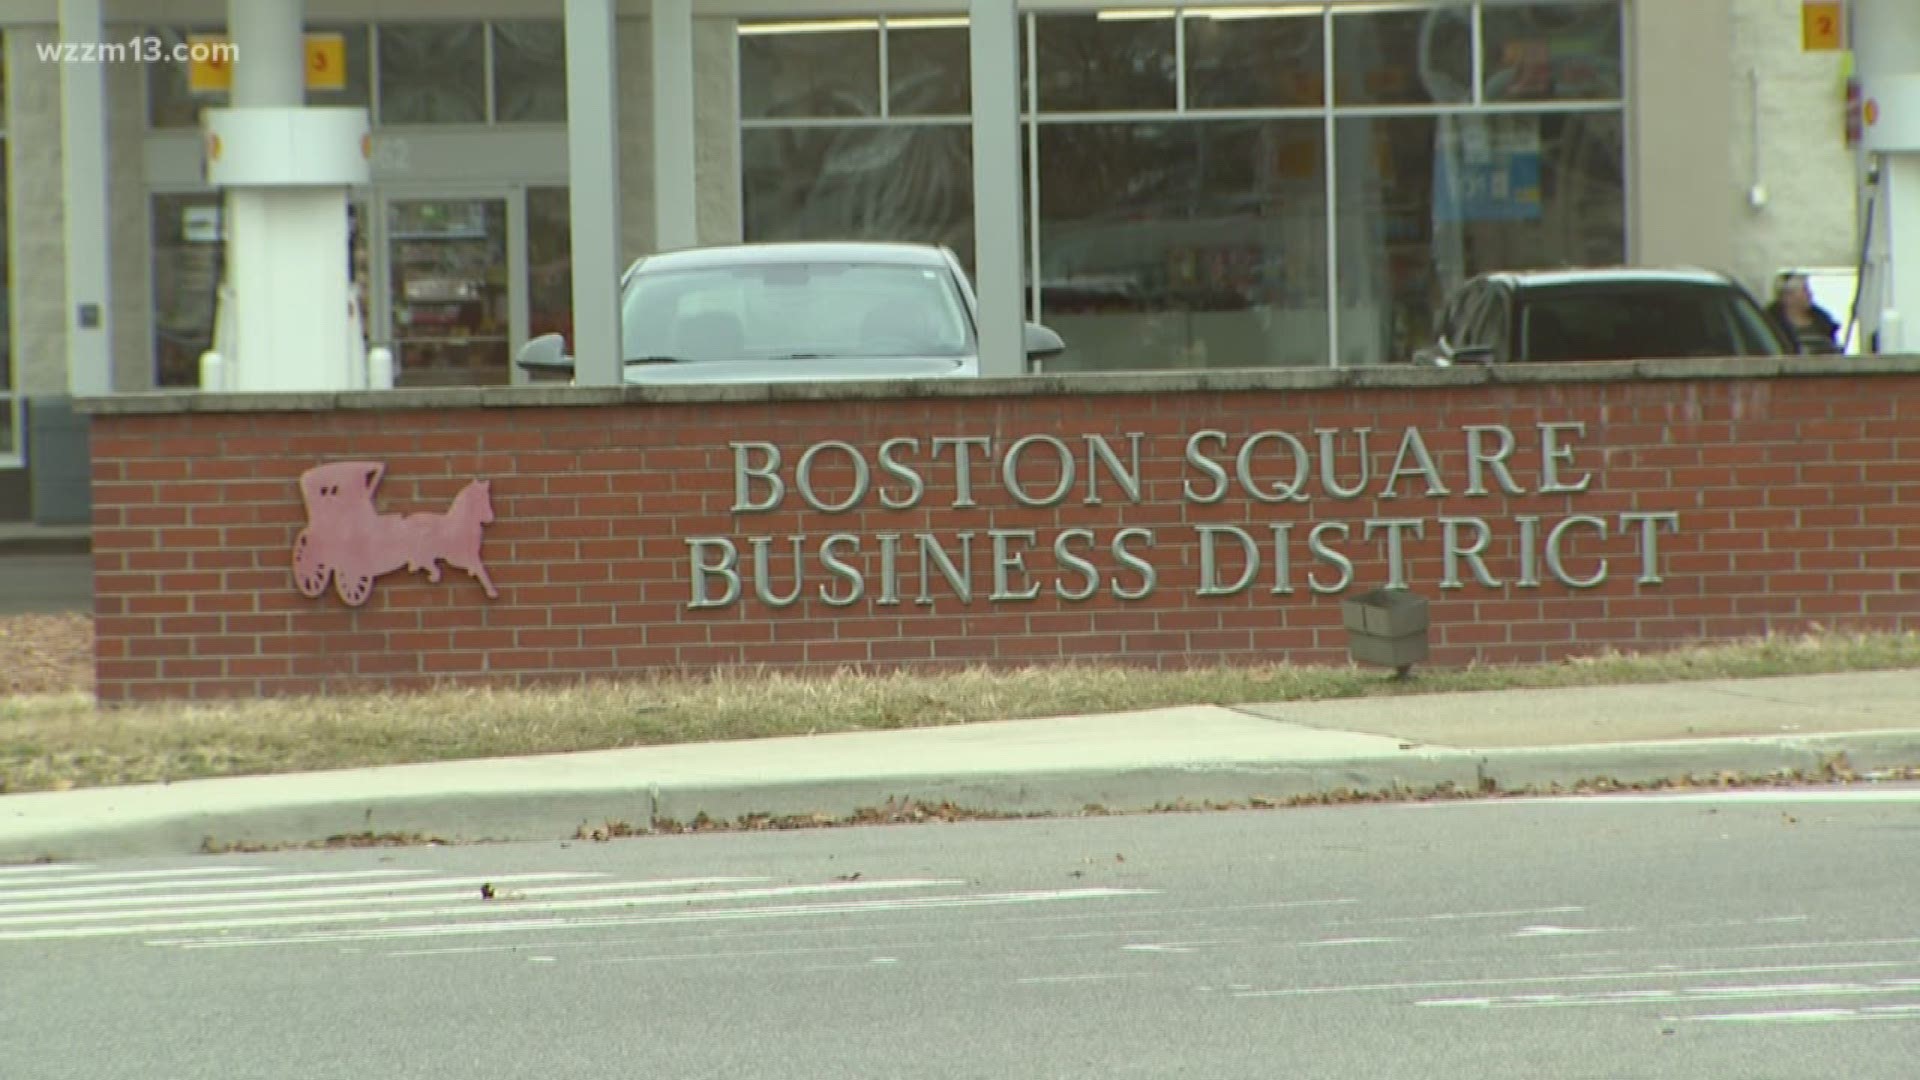 Boston Square Brewing Company name announced